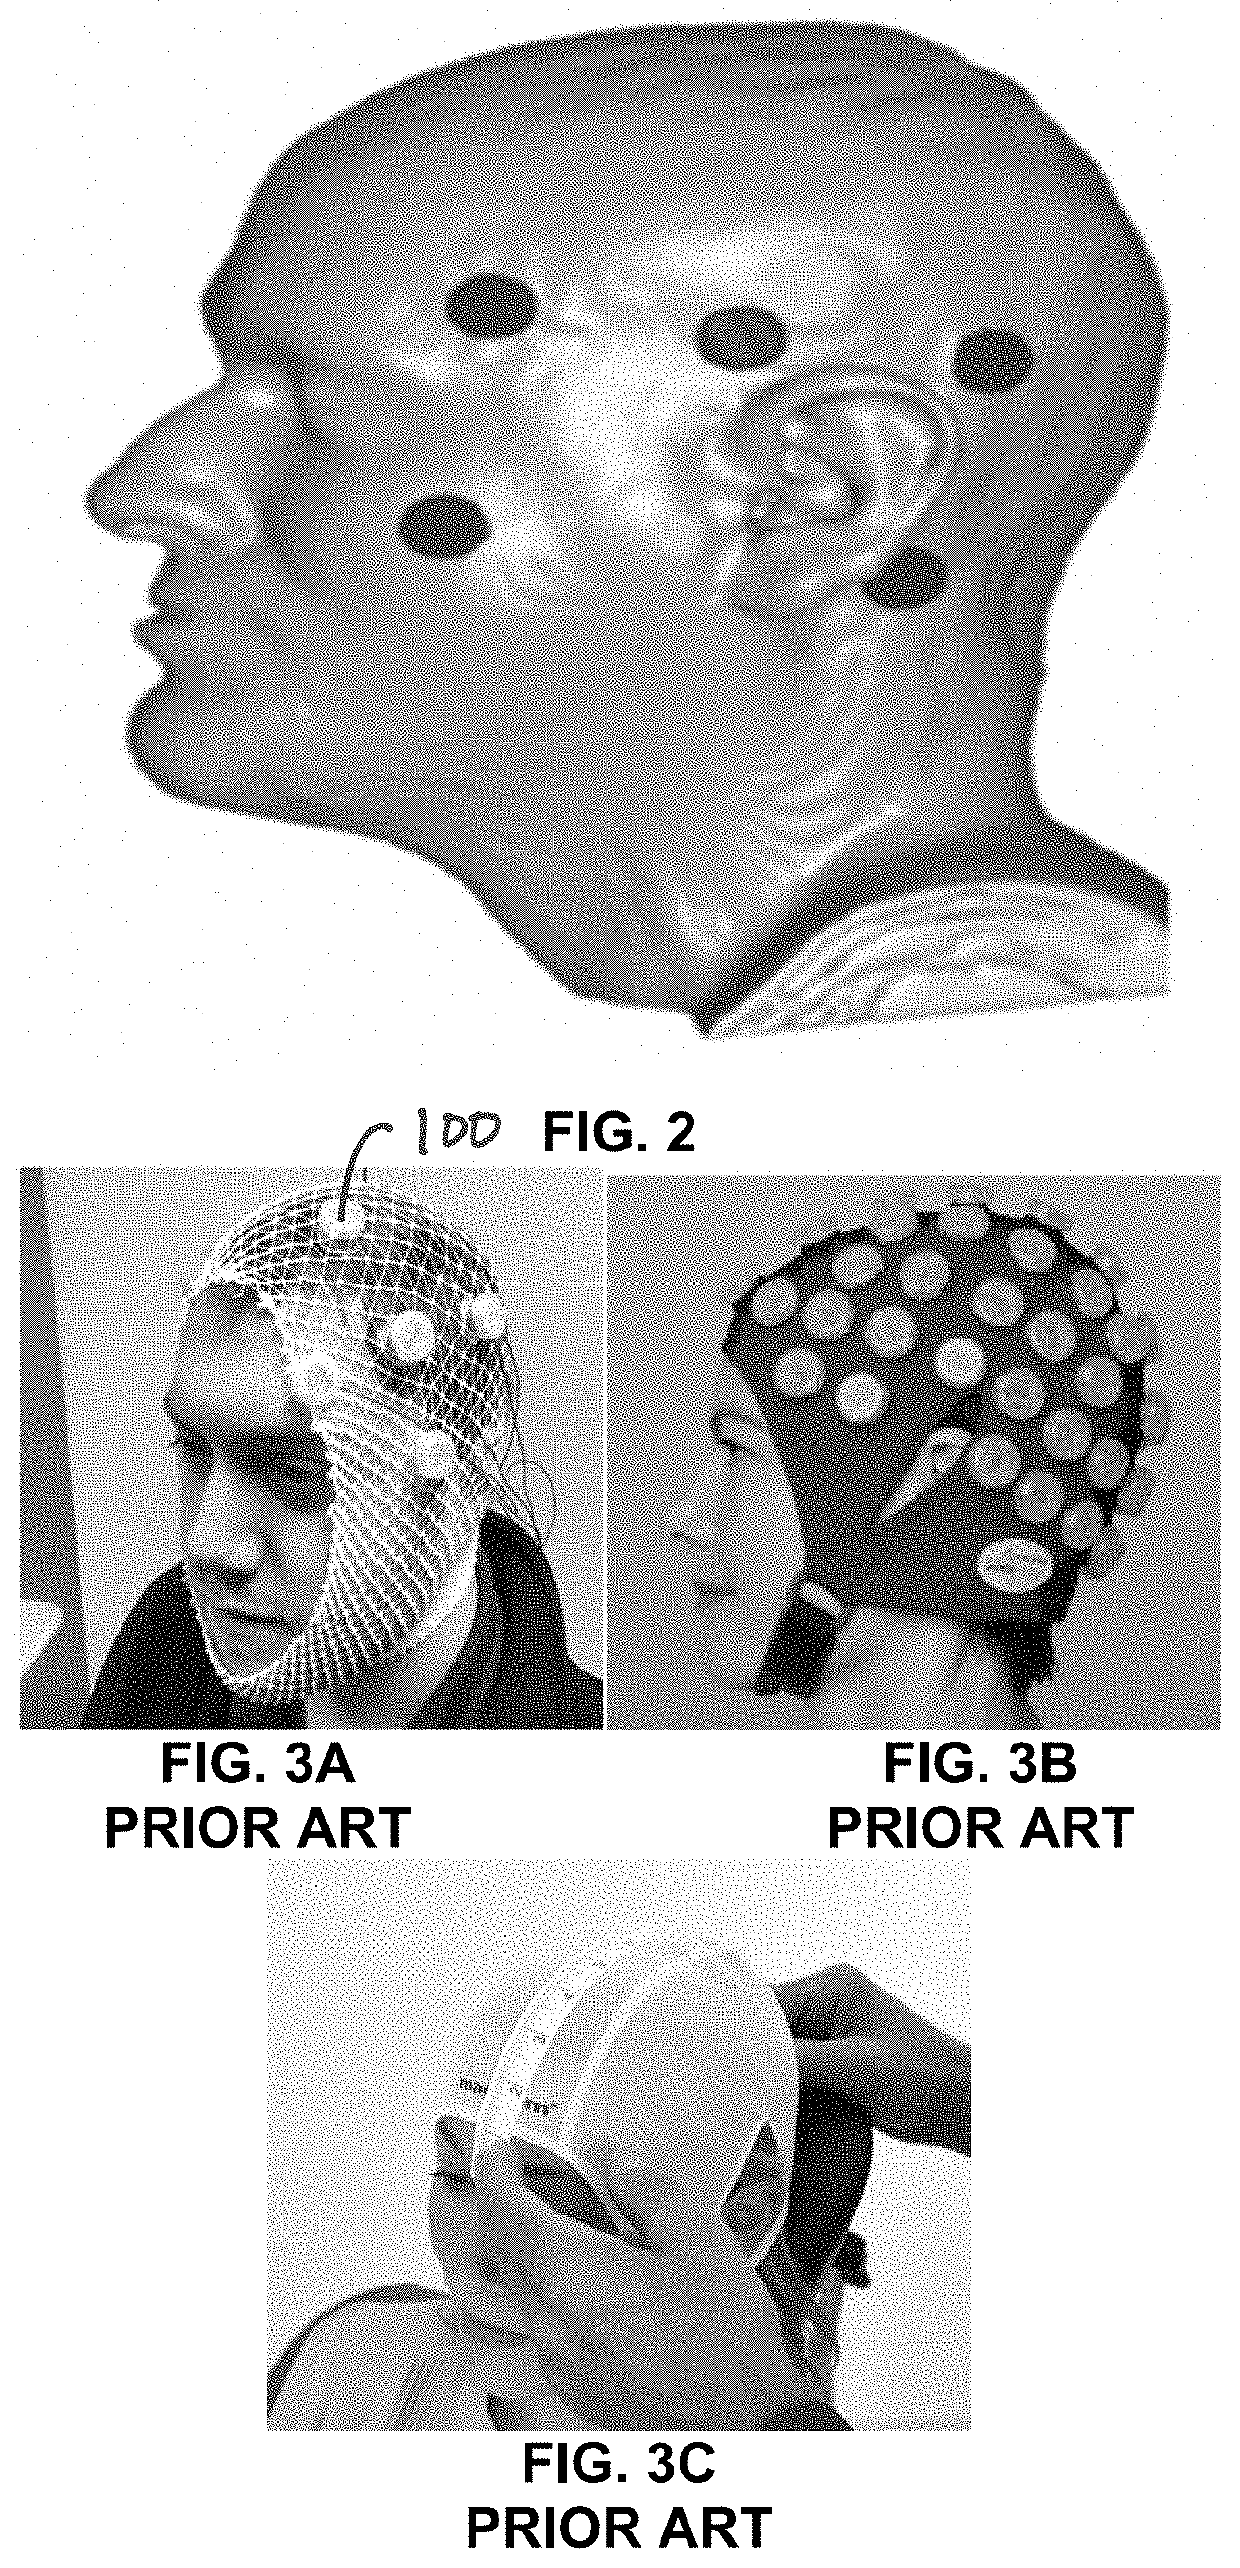 Neuropsychological and neurological rehabilitation headgear device